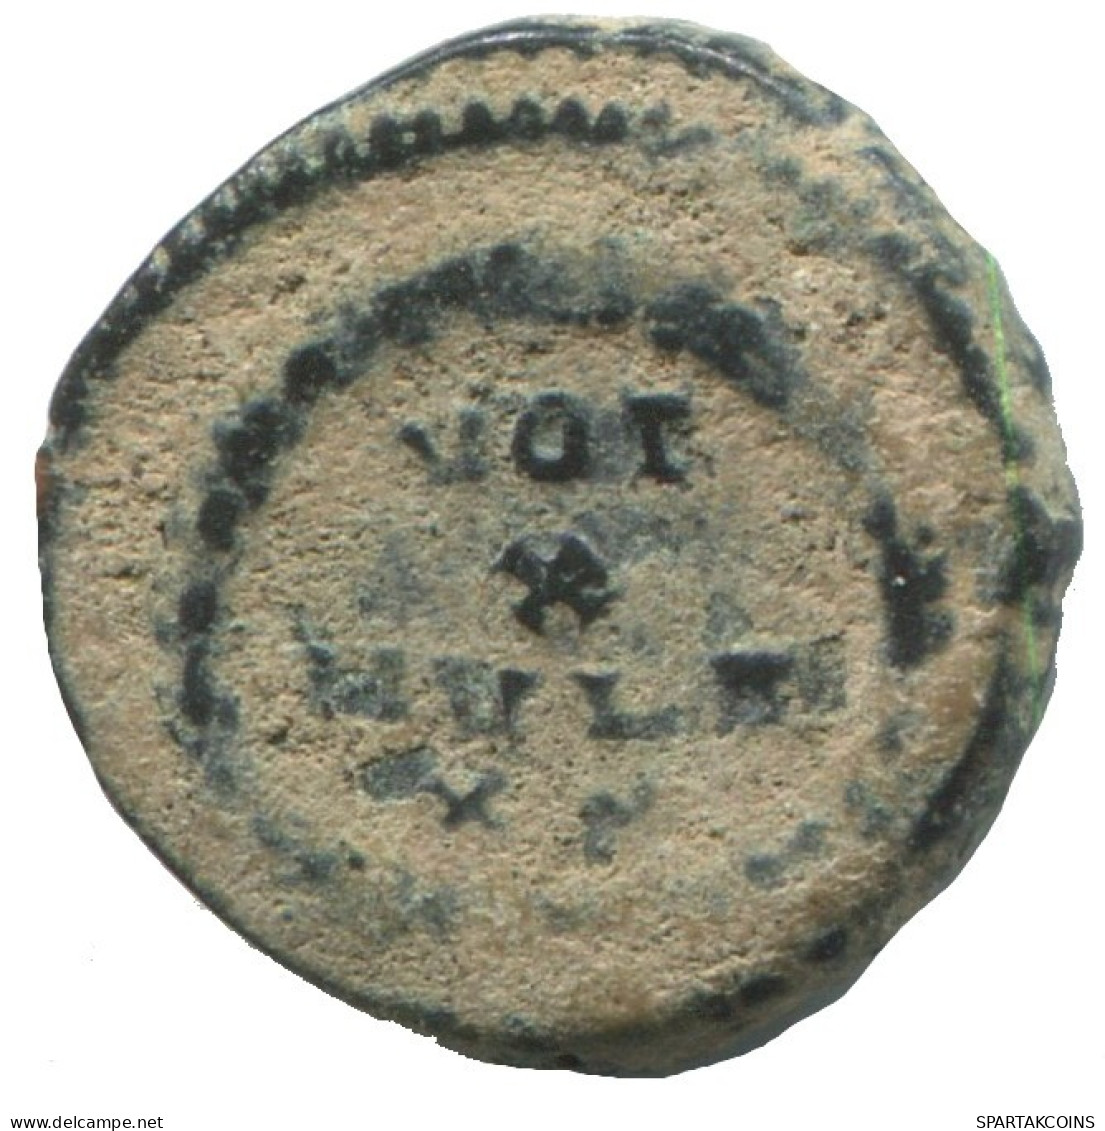 ARCADIUS AD388-391 VOT X MVLT XX 1.3g/13mm ROMAN IMPERIO Moneda #ANN1392.9.E.A - La Fin De L'Empire (363-476)